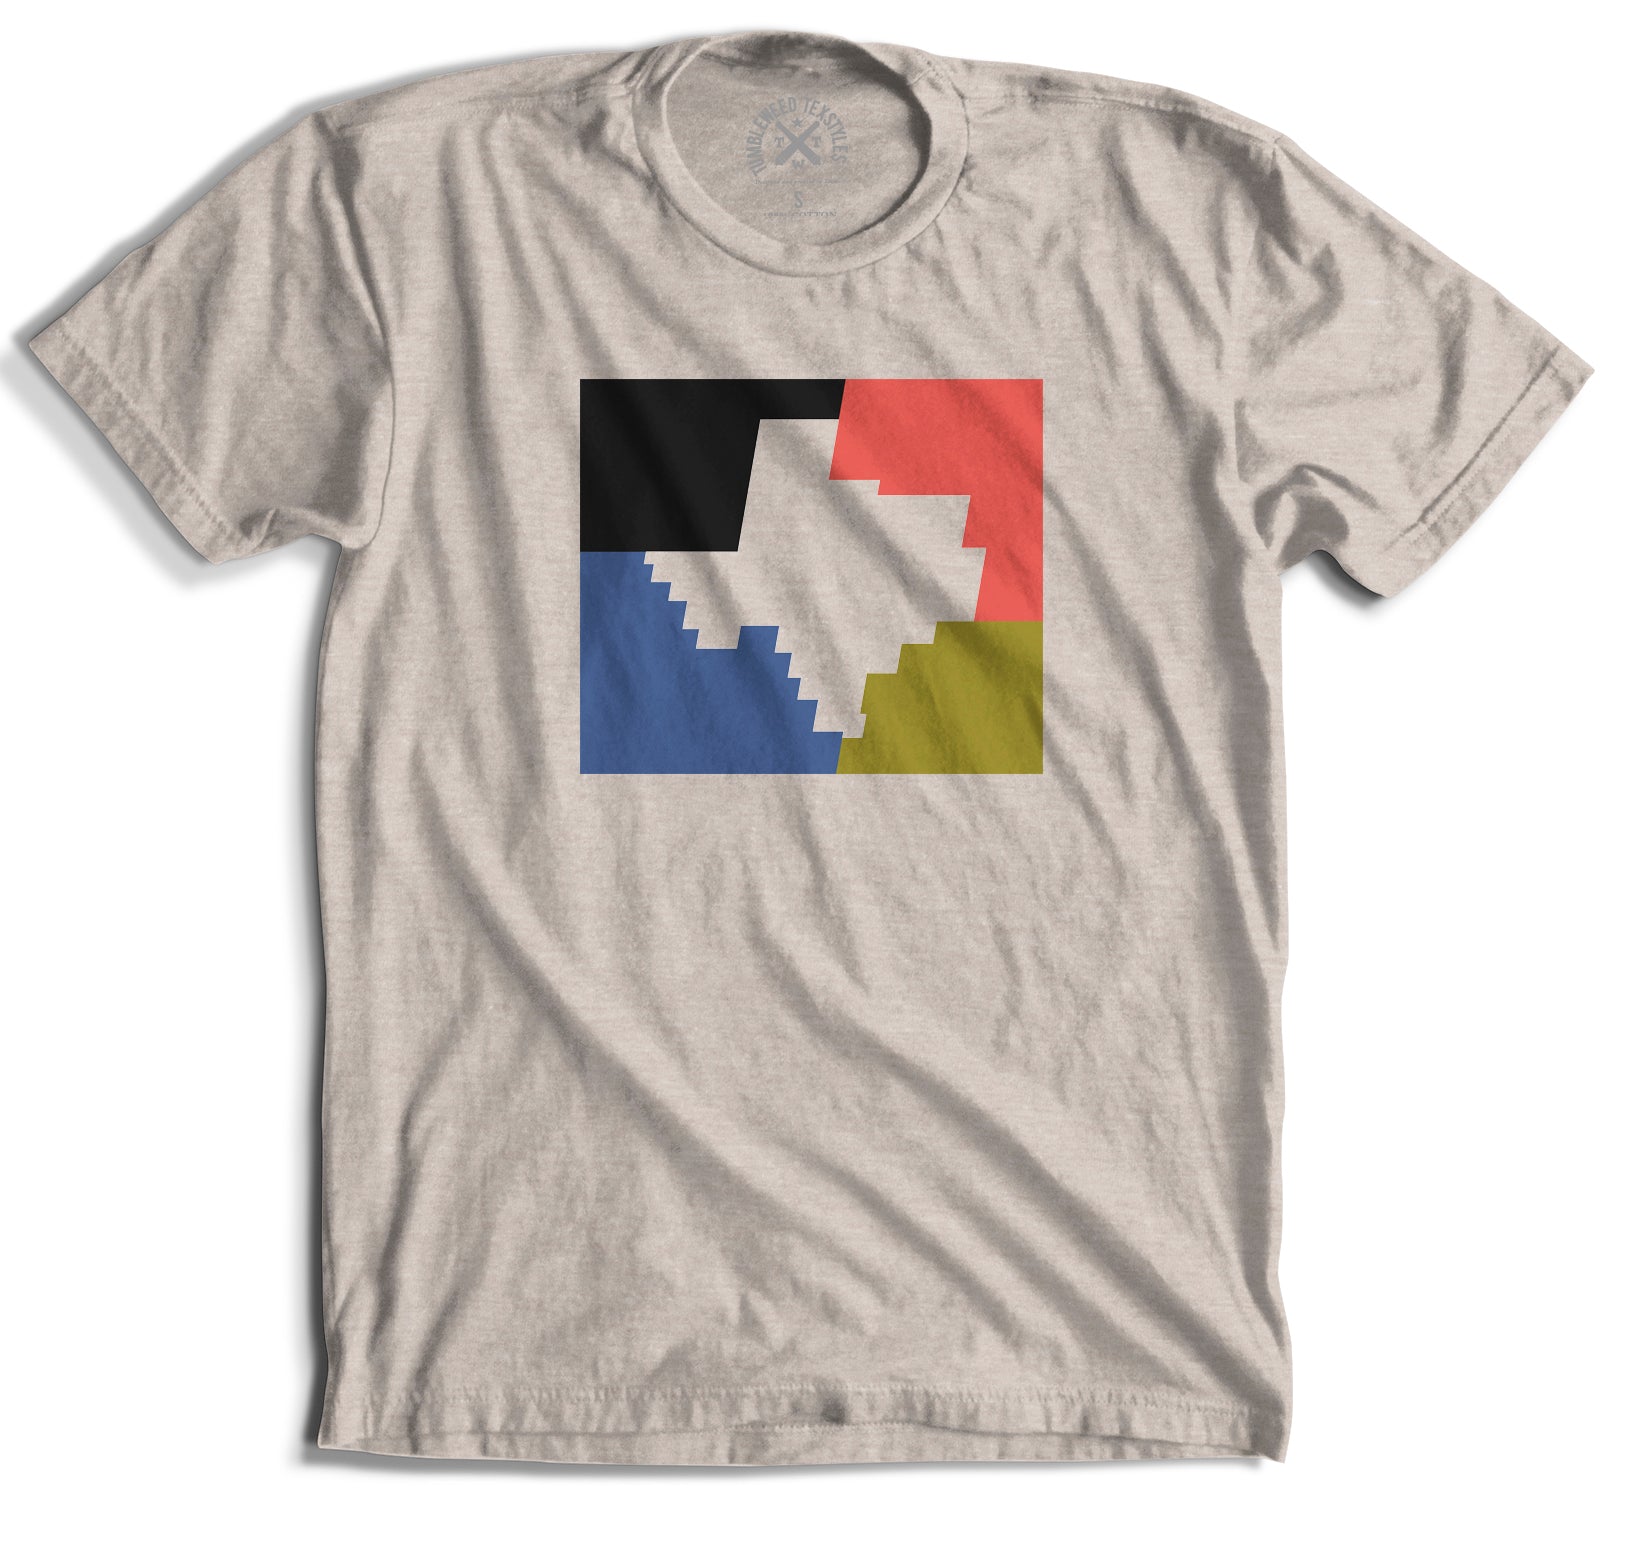 Retro Patchwork Texas T-Shirt